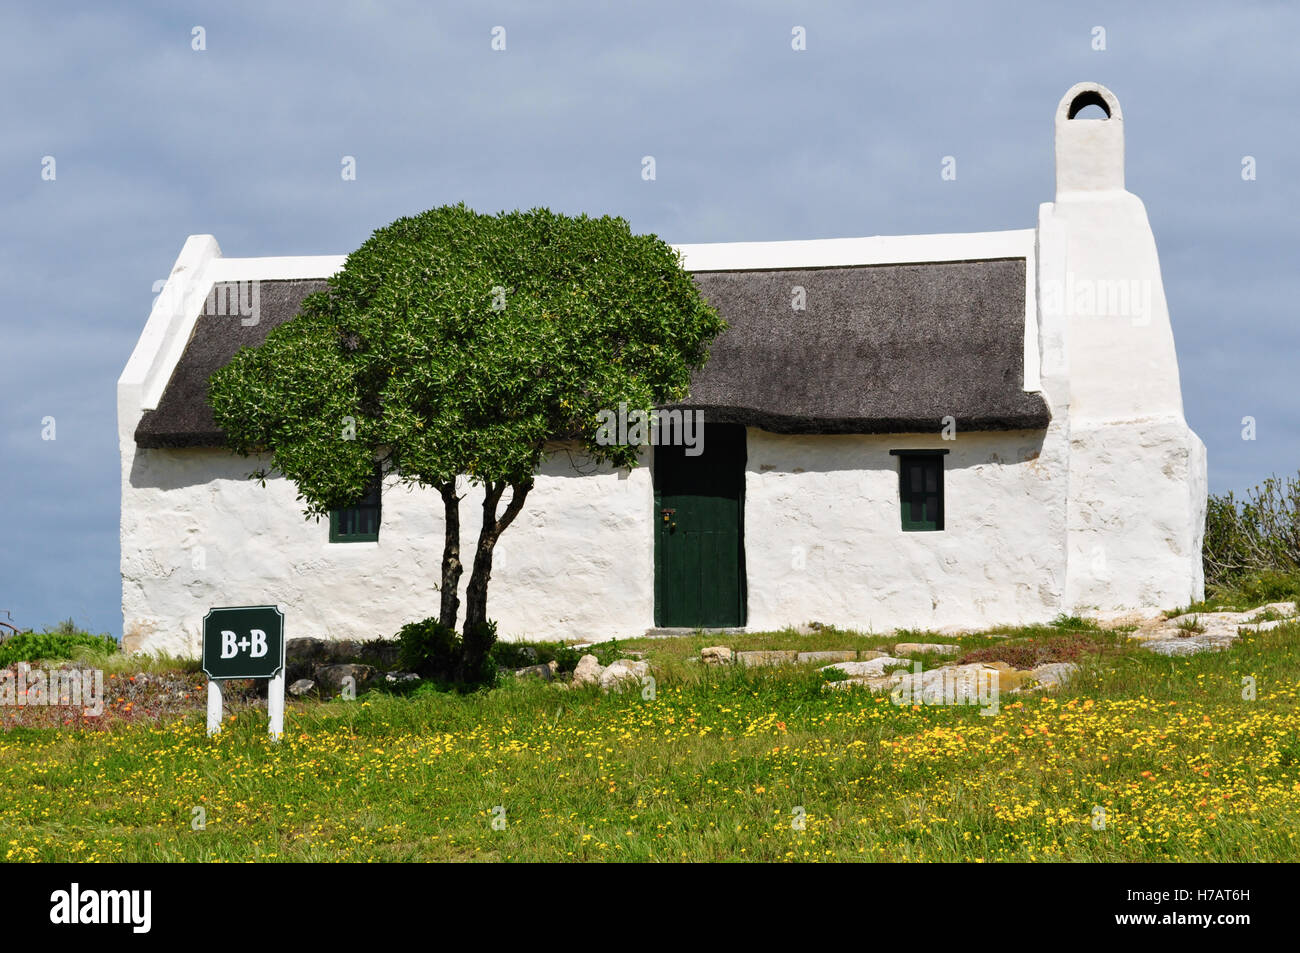 L'Afrique du Sud, sur la route de cap Agulhas : paysage idyllique à la campagne avec un white Bed and Breakfast, une pelouse verte et fleurs jaune Banque D'Images